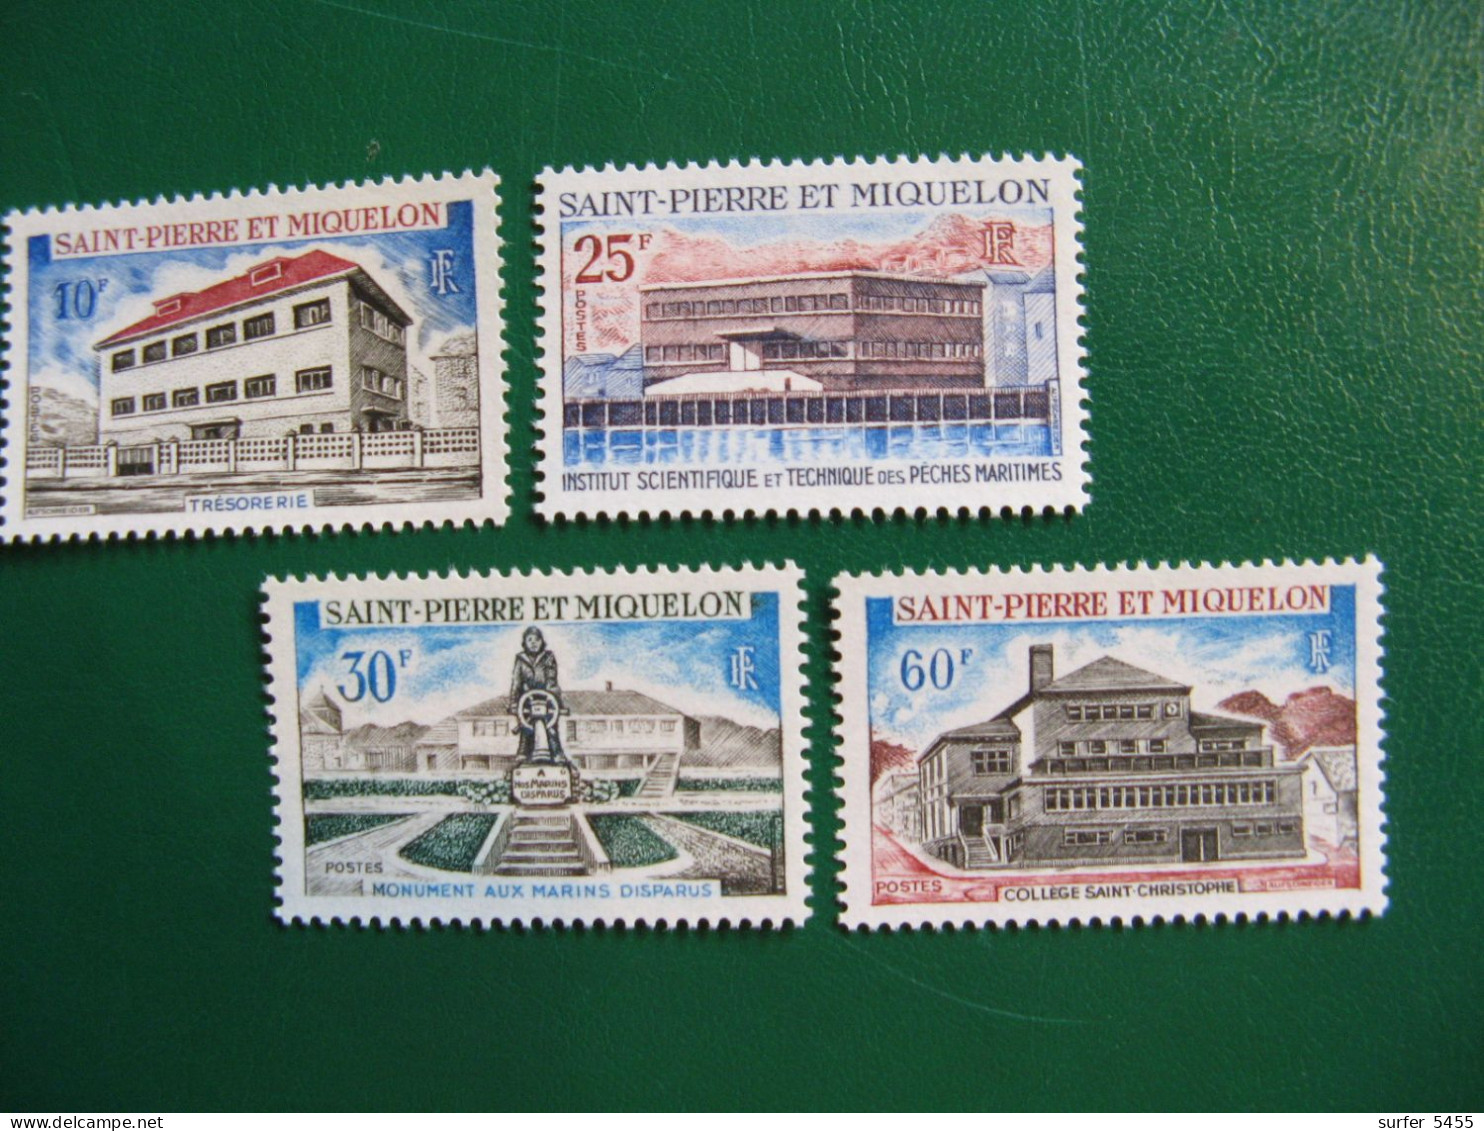 SAINT PIERRE ET MIQUELON YVERT POSTE ORDINAIRE N° 387/390 NEUFS** LUXE - MNH -  COTE 50,00 EUROS - Unused Stamps